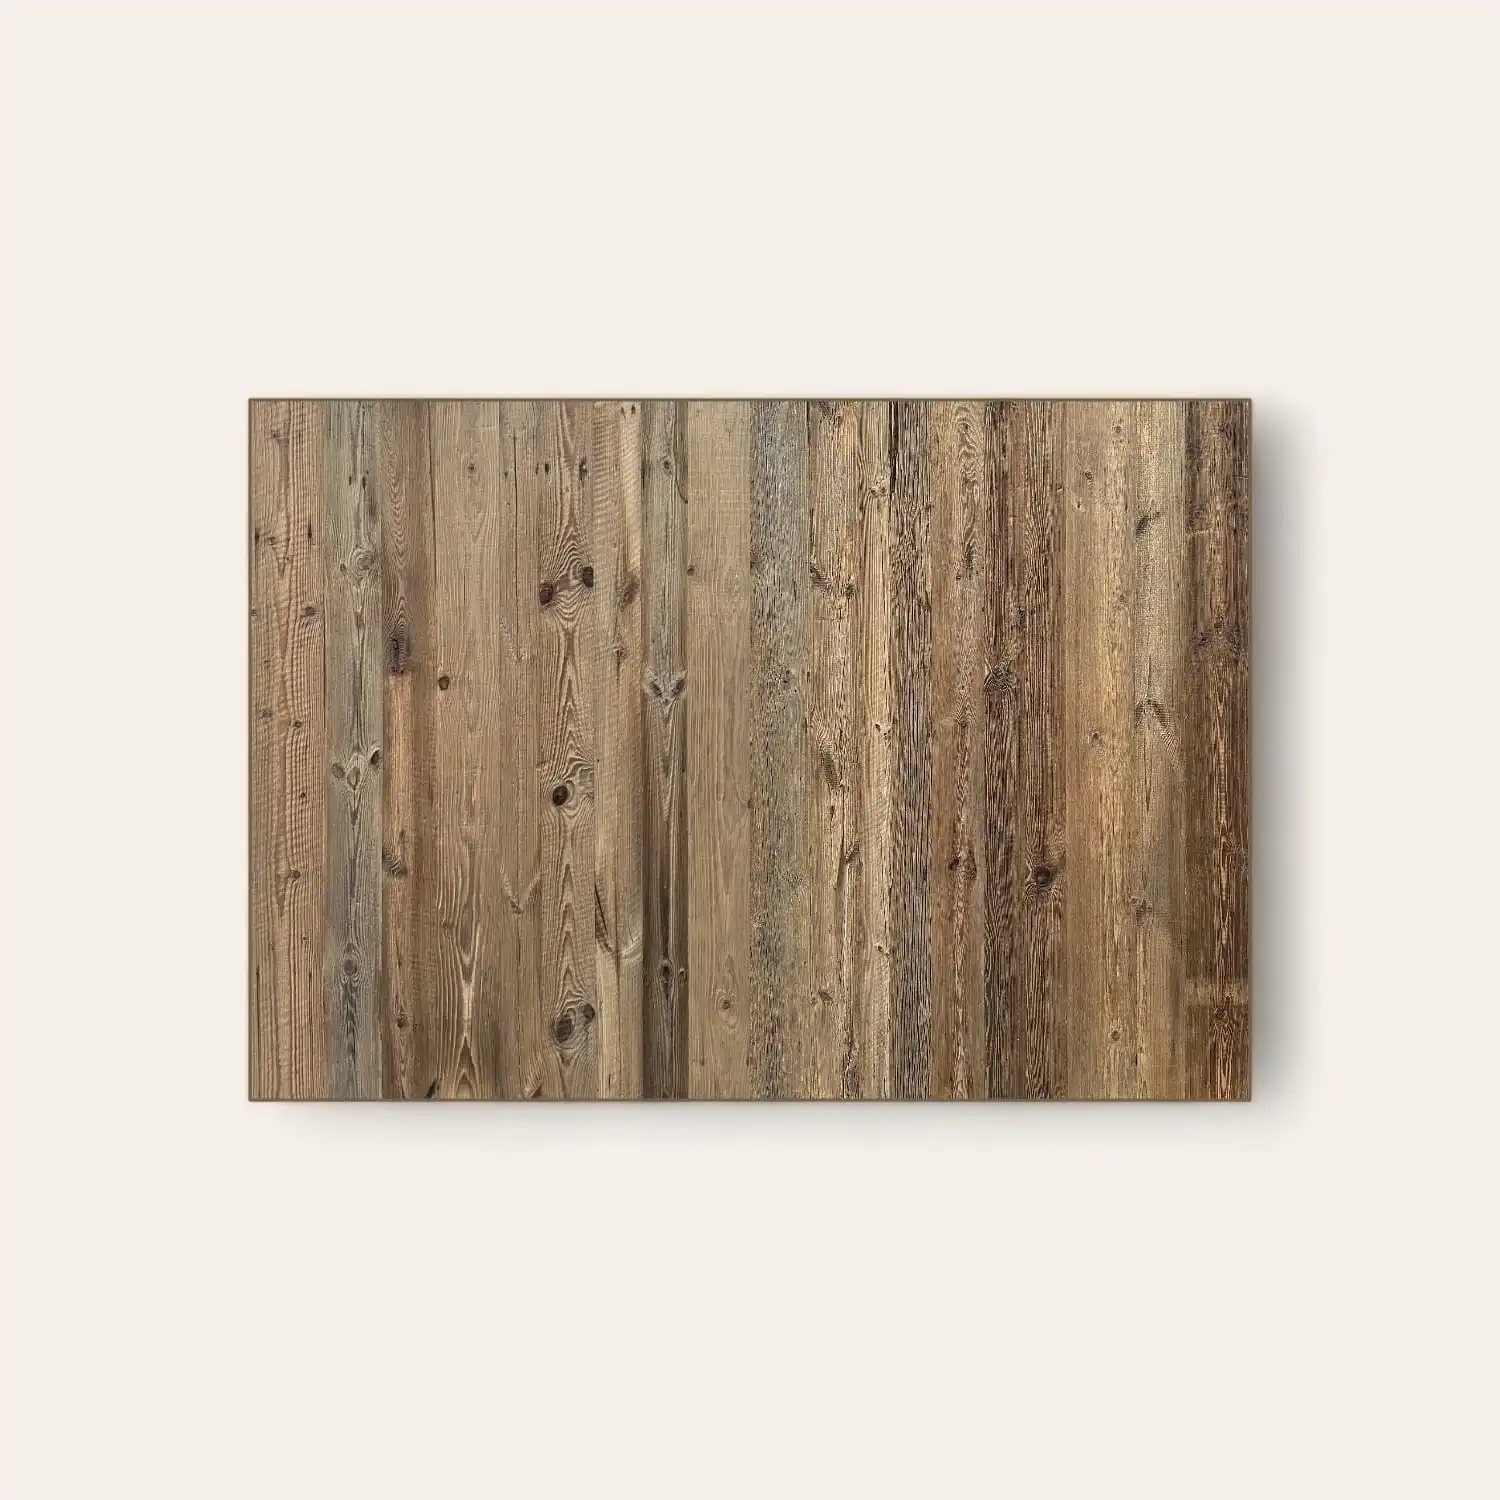  Tête de lit en bois rustique avec différentes nuances de brun. 